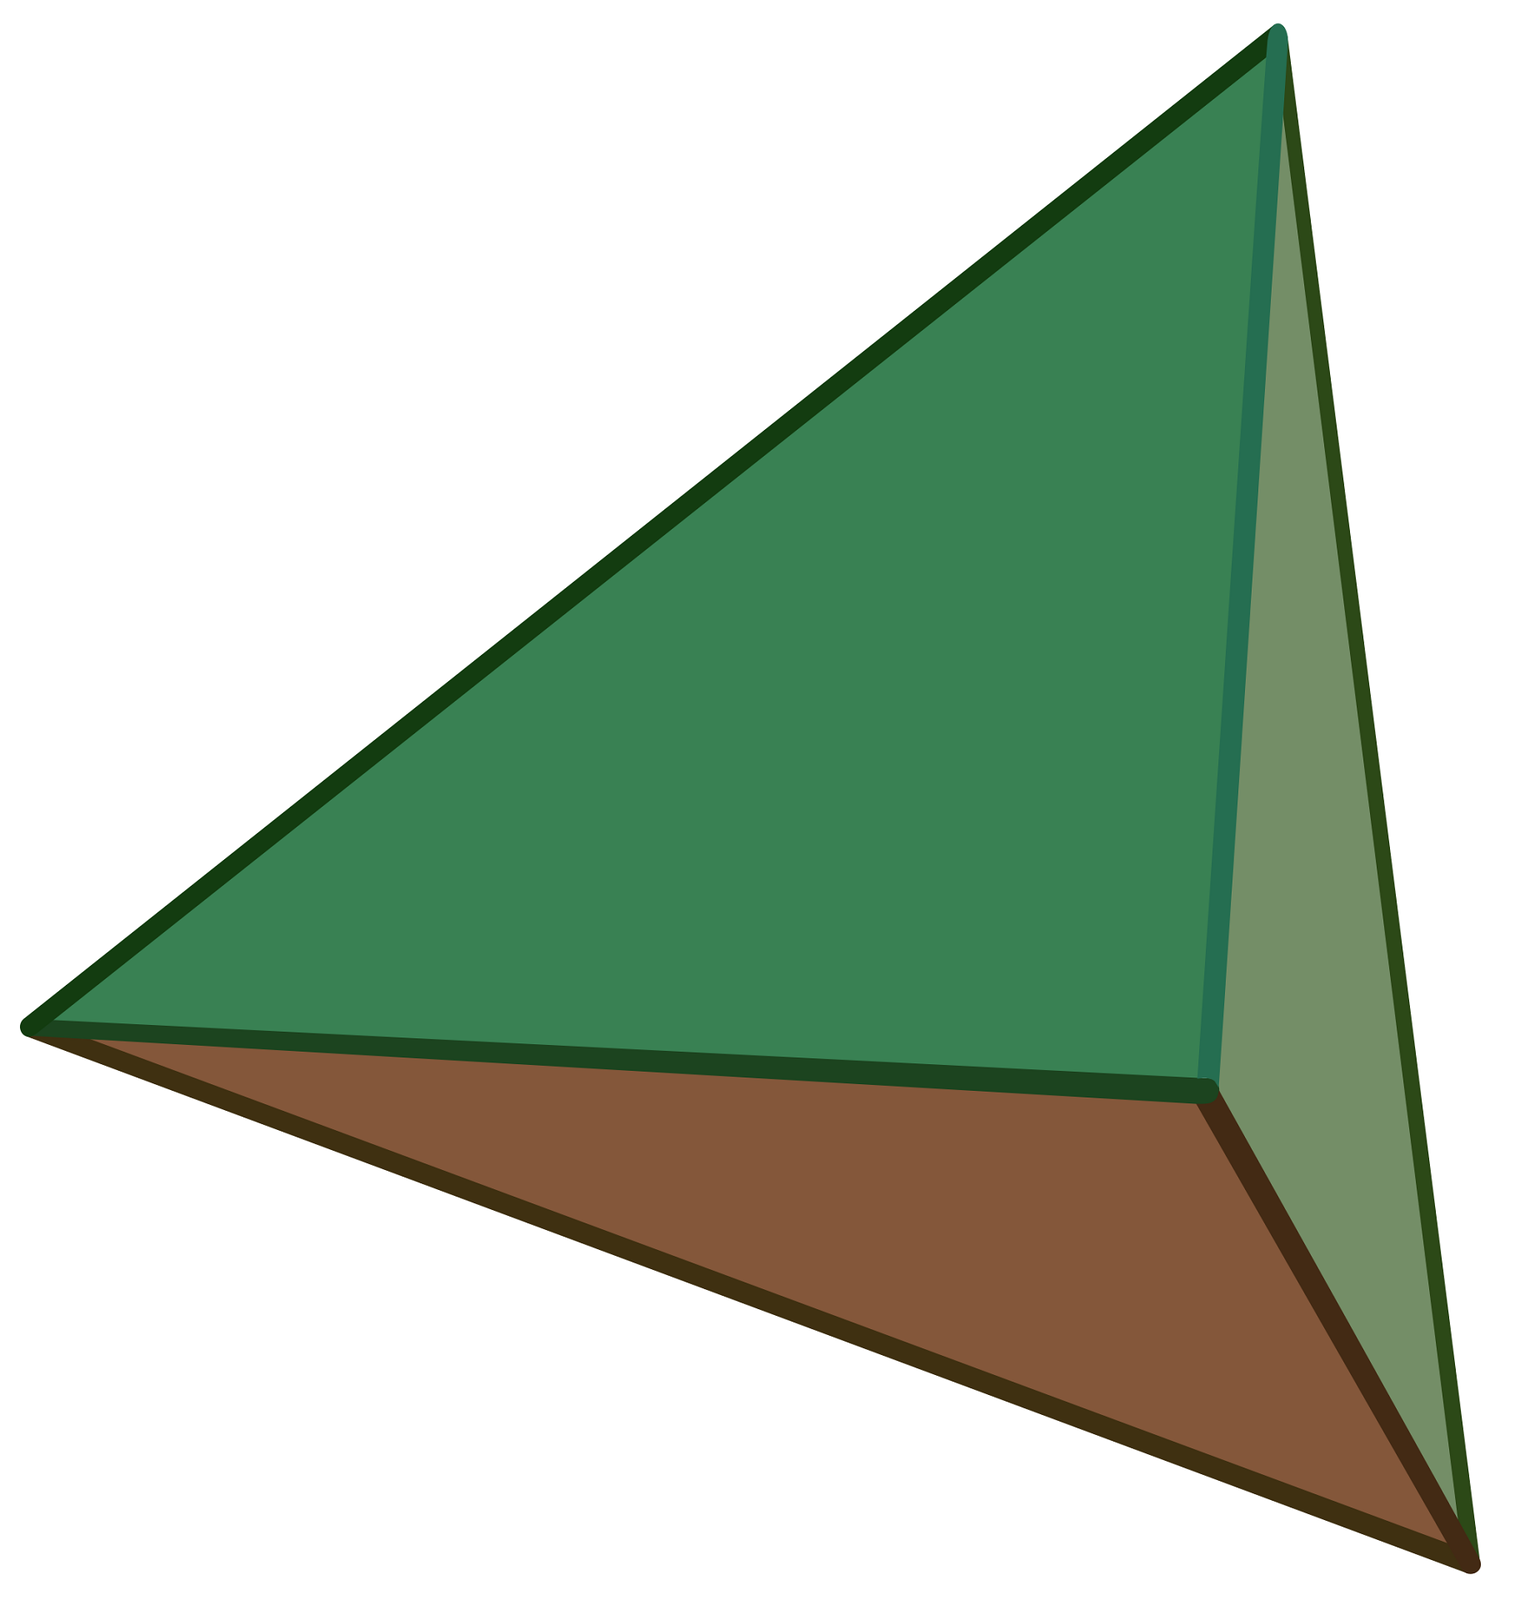 Grafika przedstawia czworościan foremny - bryła przestrzenna. Na grafice zaprezentowane są tylko trzy ściany: podstawa koloru brązowego, lewa ściana boczna koloru zielonego i prawa ściana boczna koloru szaro-zielonego.